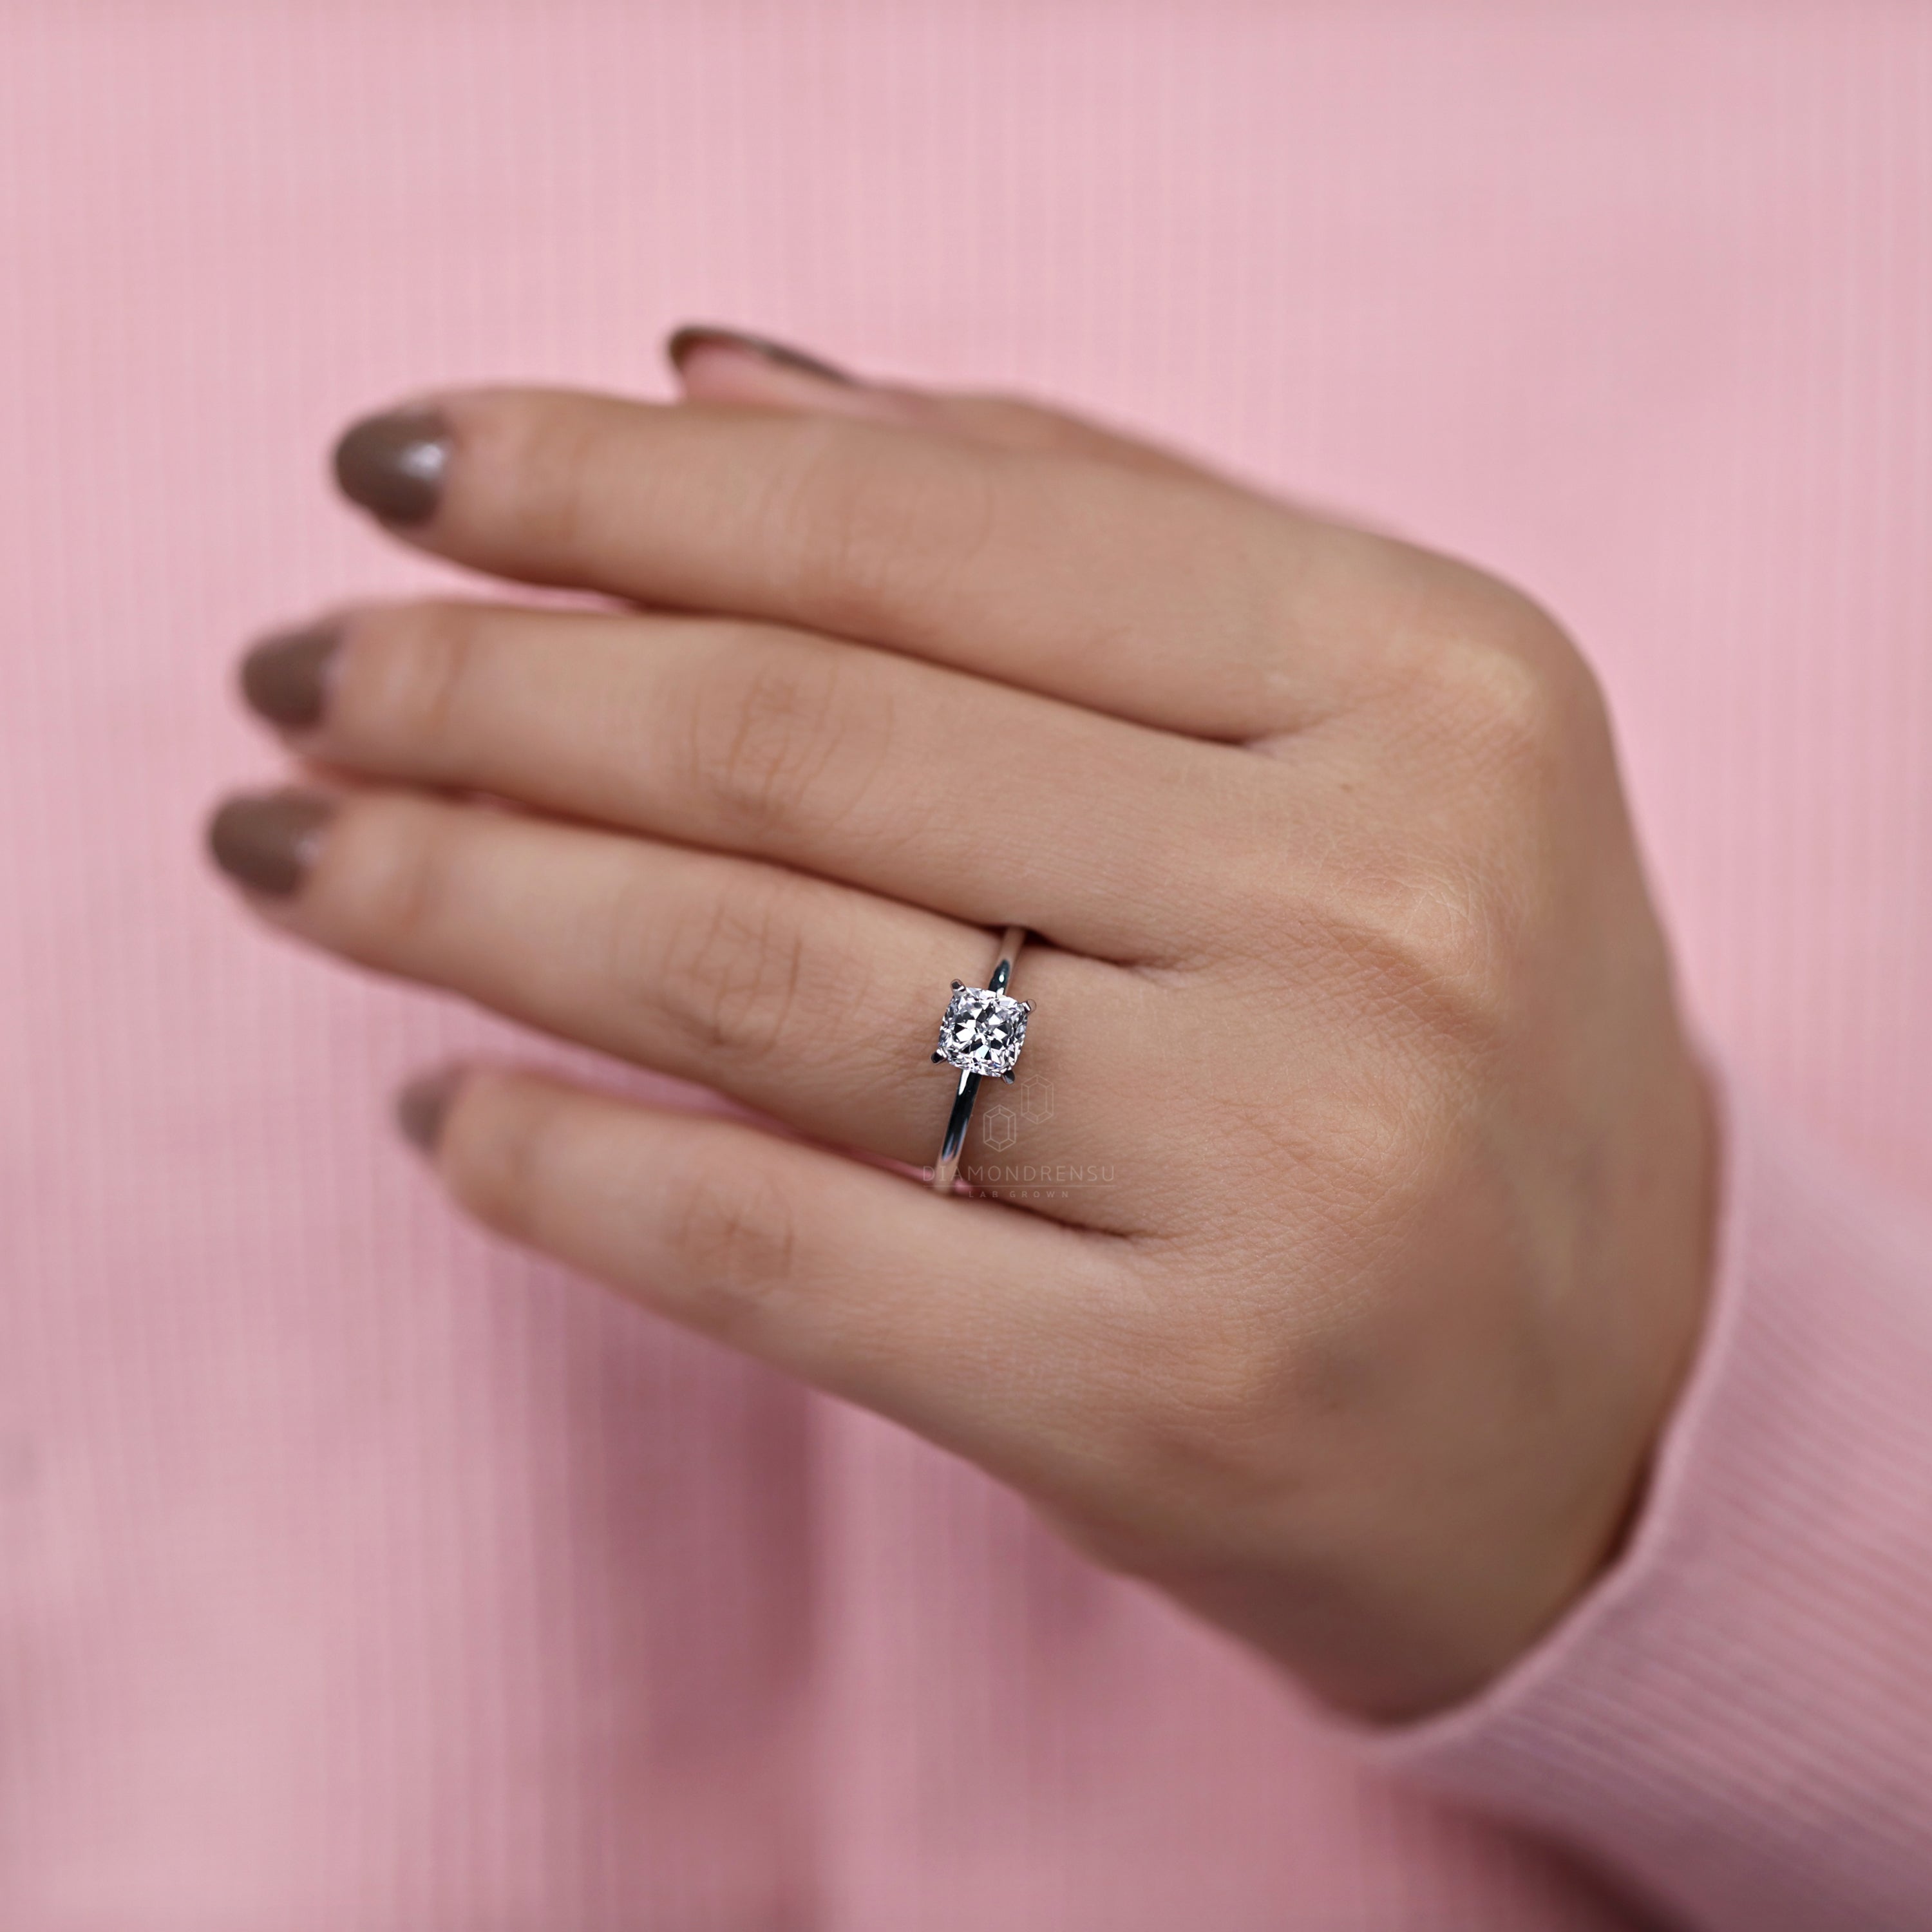 lab grown diamond wedding ring - diamondrensu